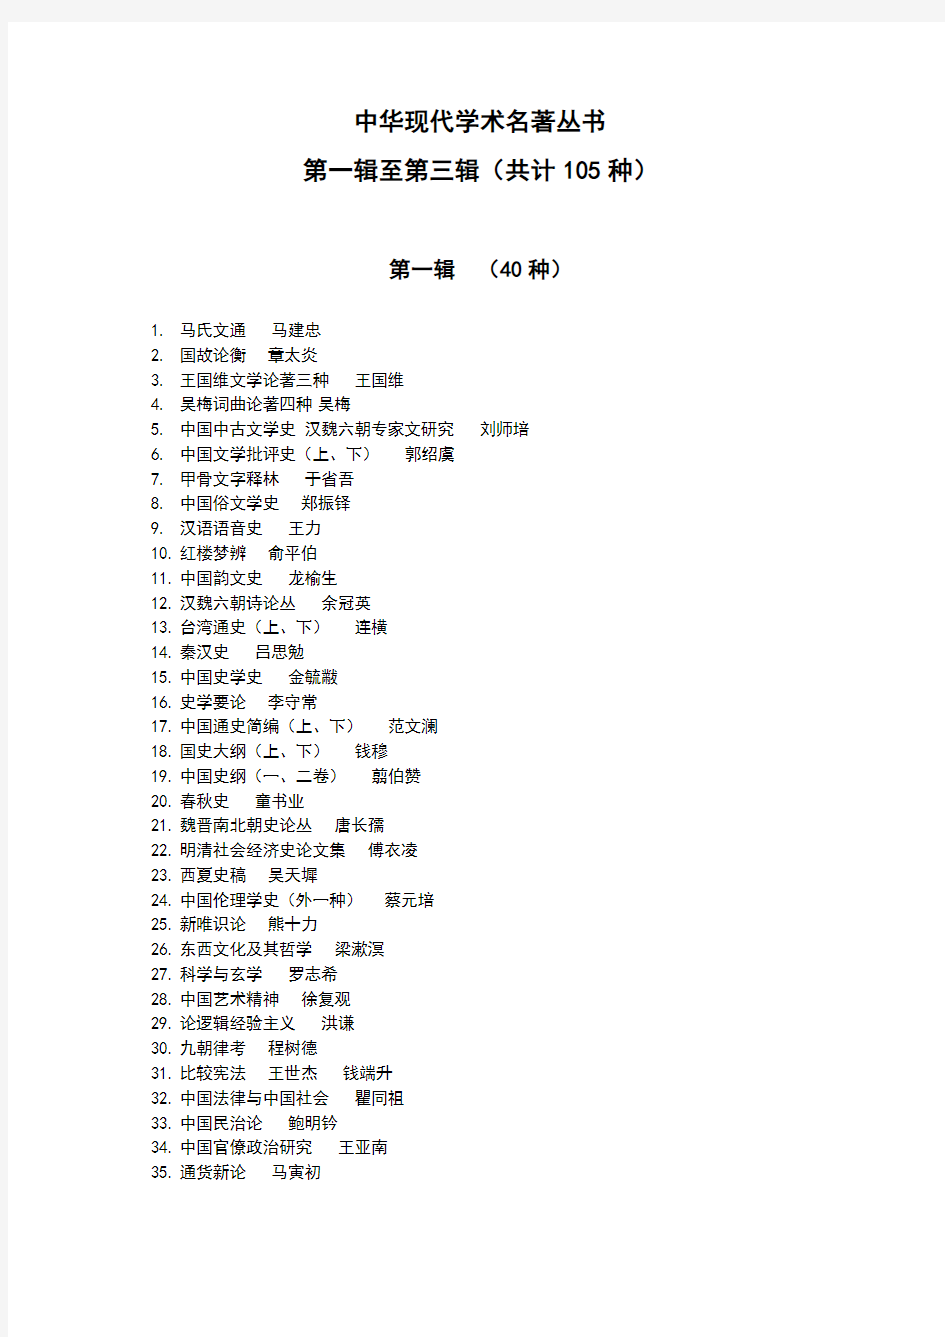 中华现代学术名著丛书 第一辑至第三辑(共计 105 种)